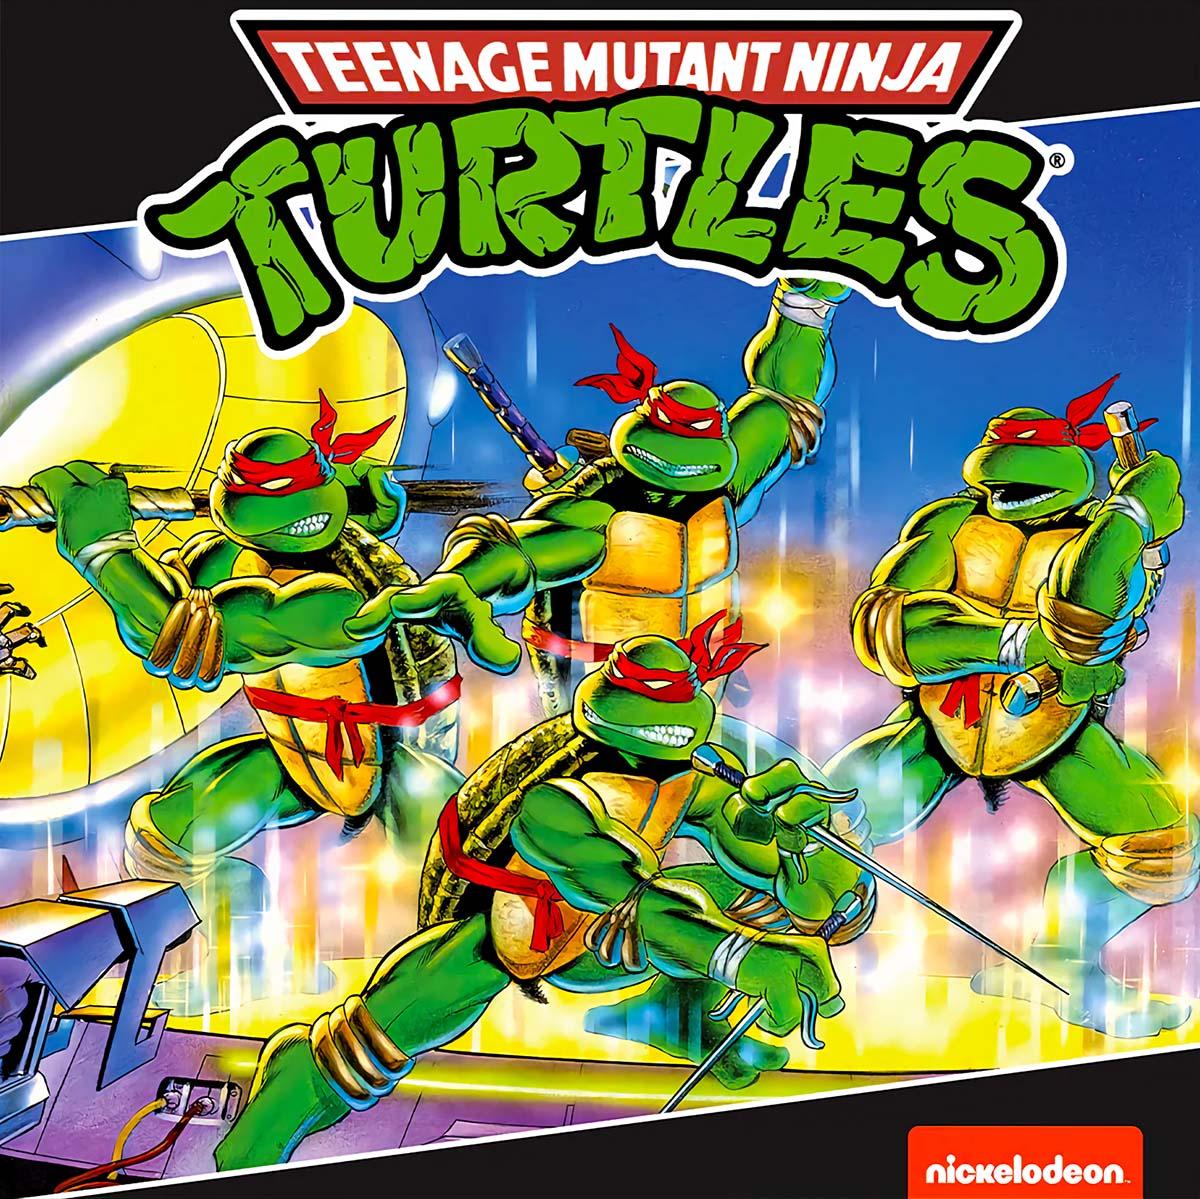 Teenage Mutant Ninja Turtles (NES) Soundtrack